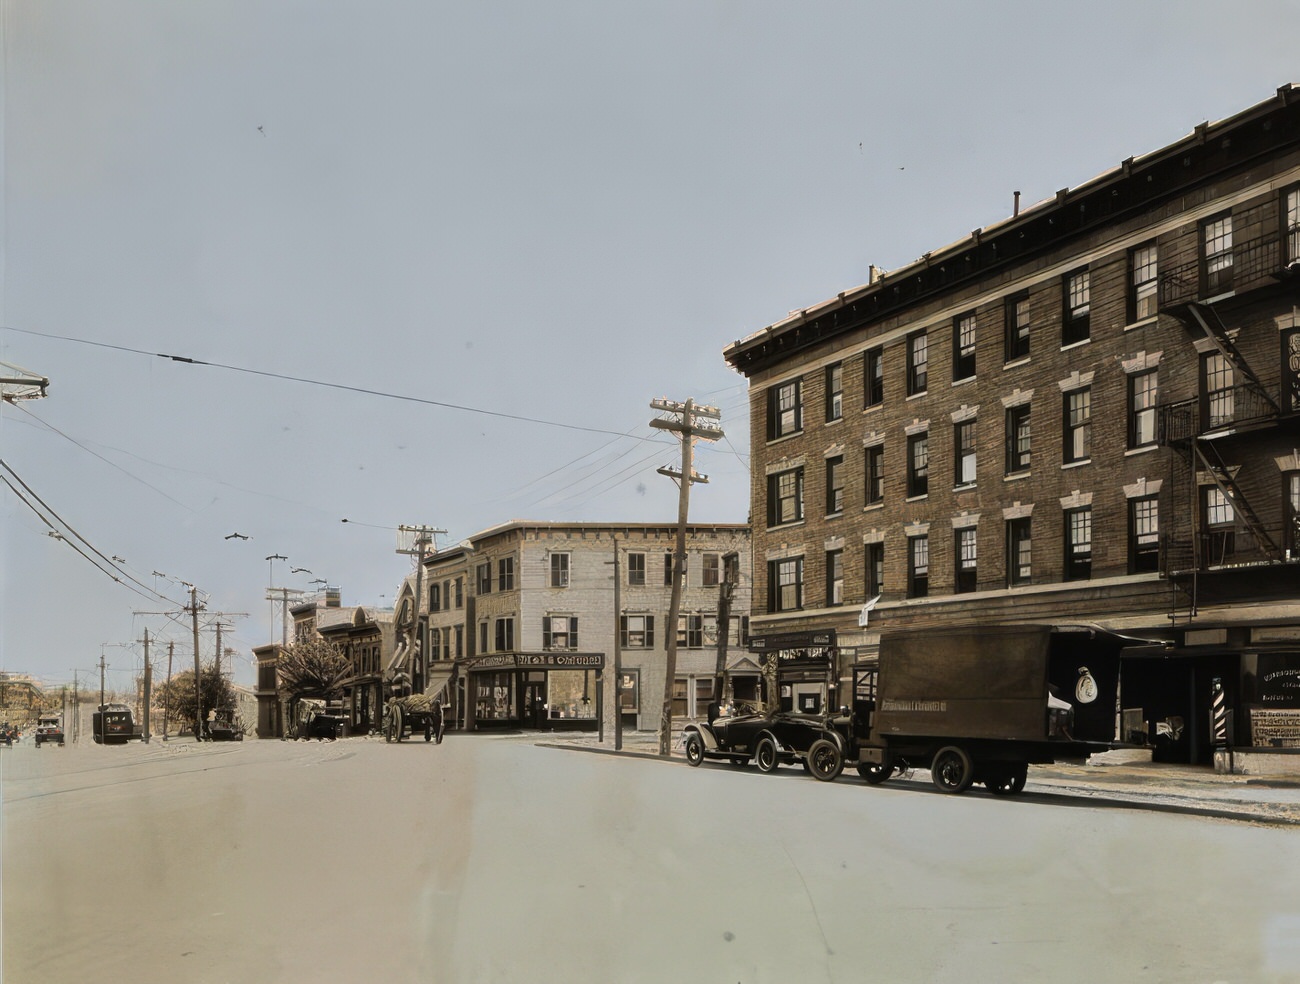 Tremont Avenue And Commonwealth Avenue, Circa 1925.